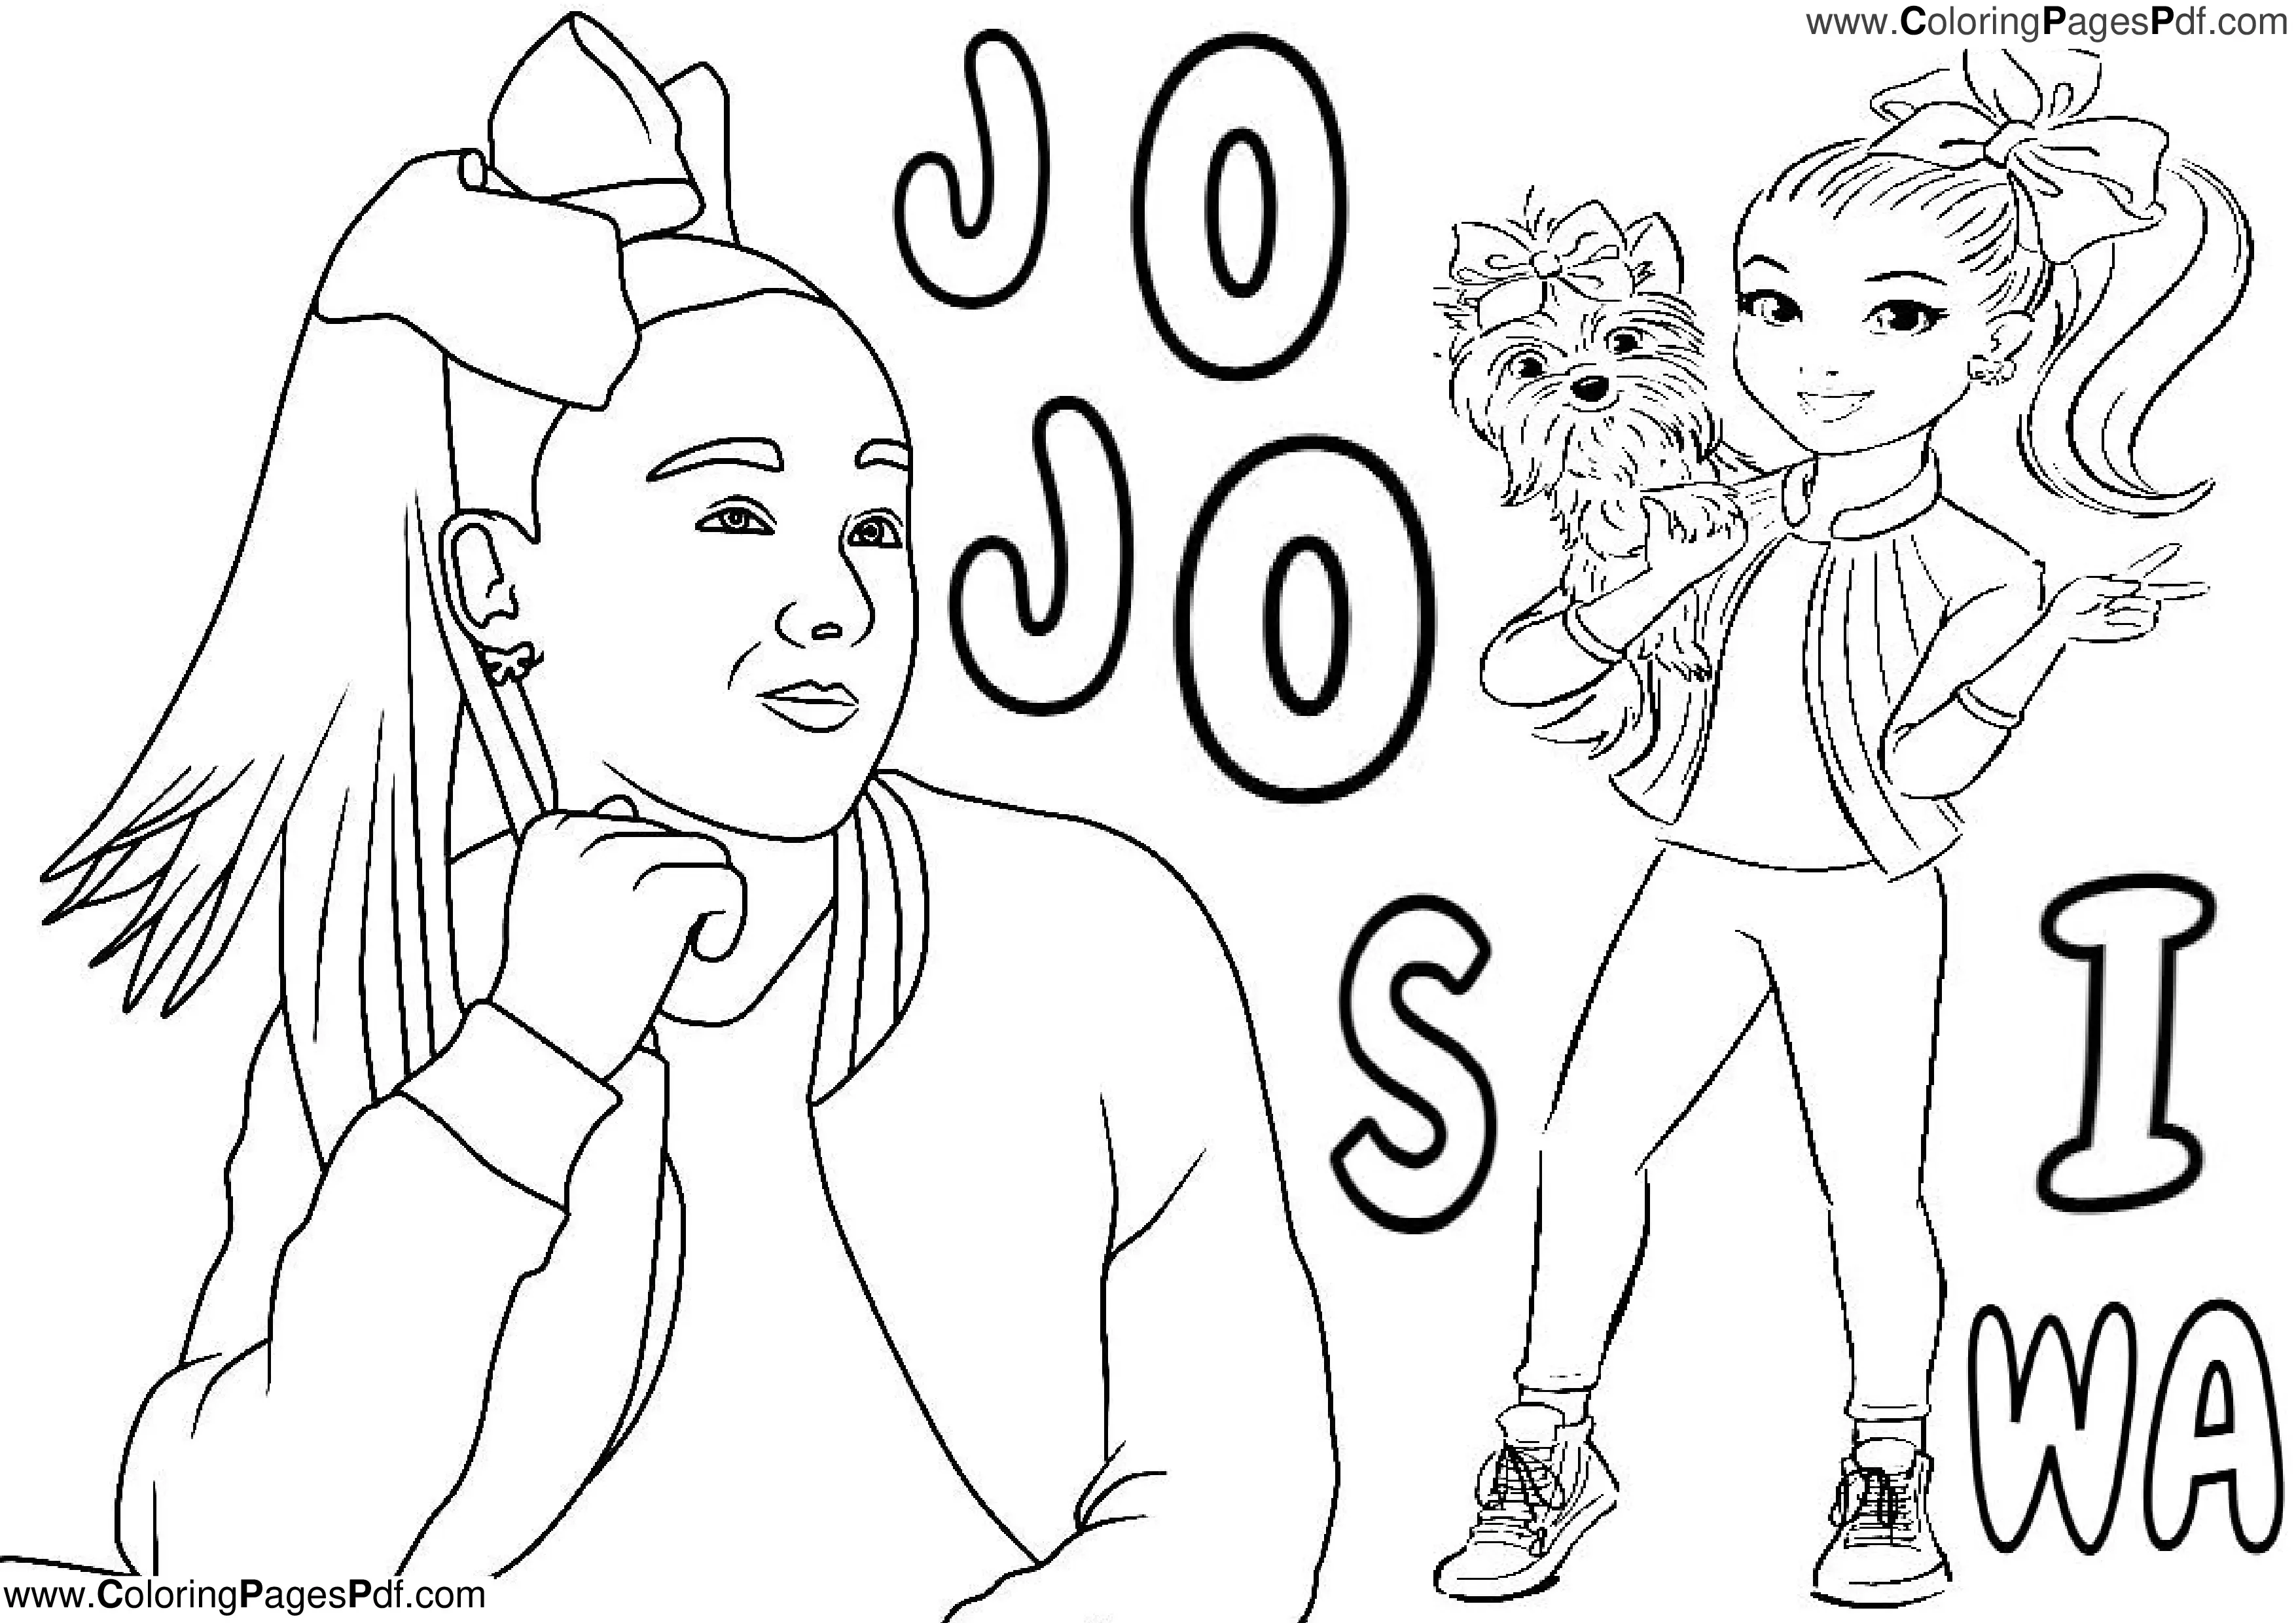 Jojo siwa coloring pages pdf